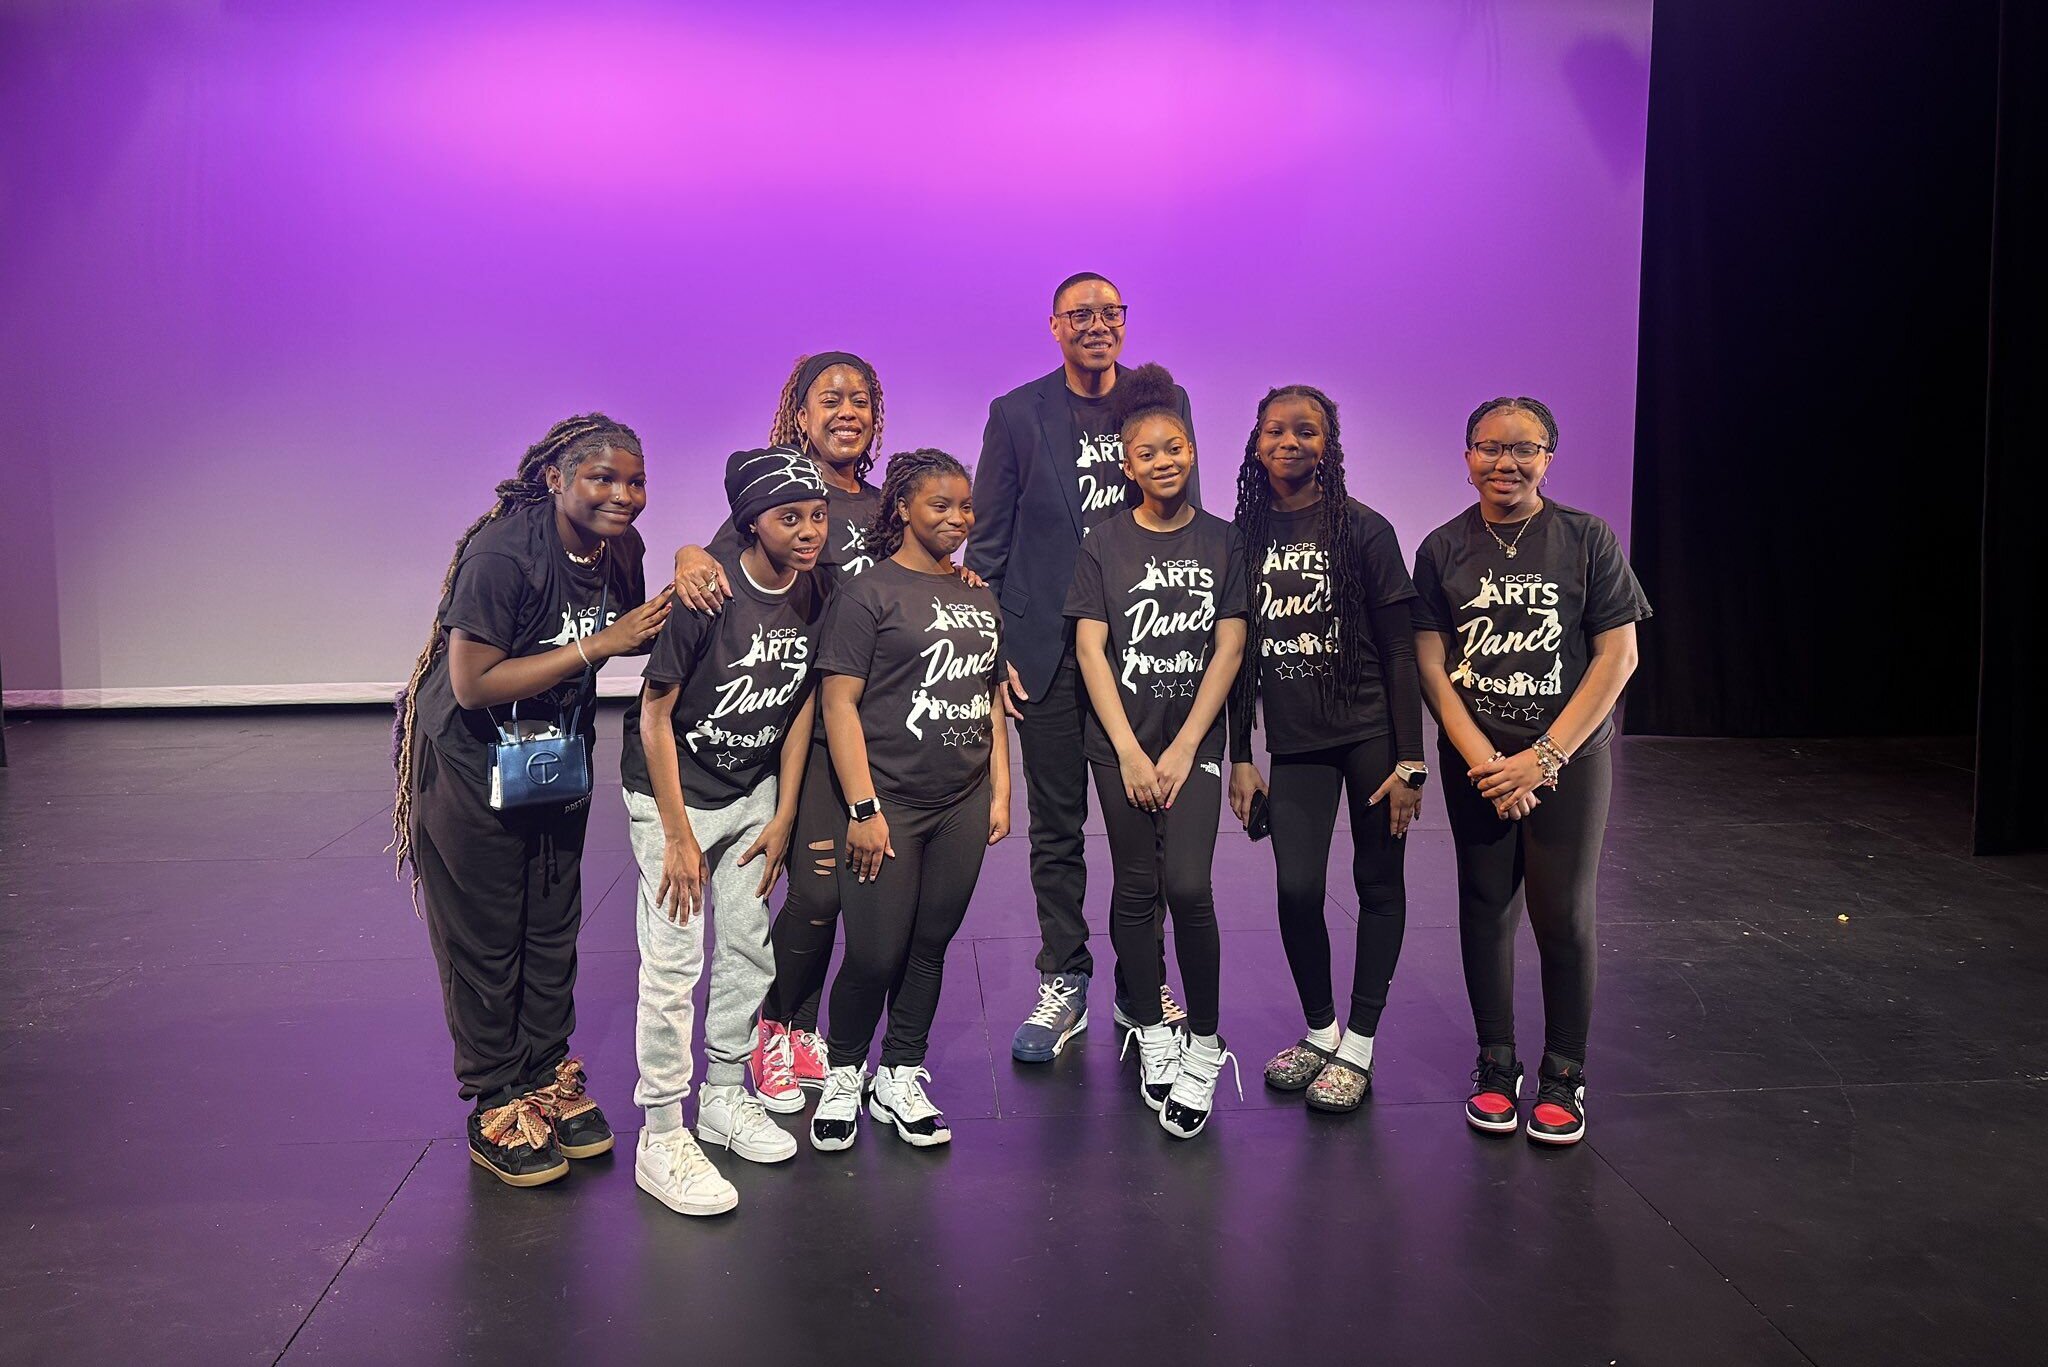 80名DC公立学校学生参加第二届庆祝多样性的DC公立学校舞蹈节